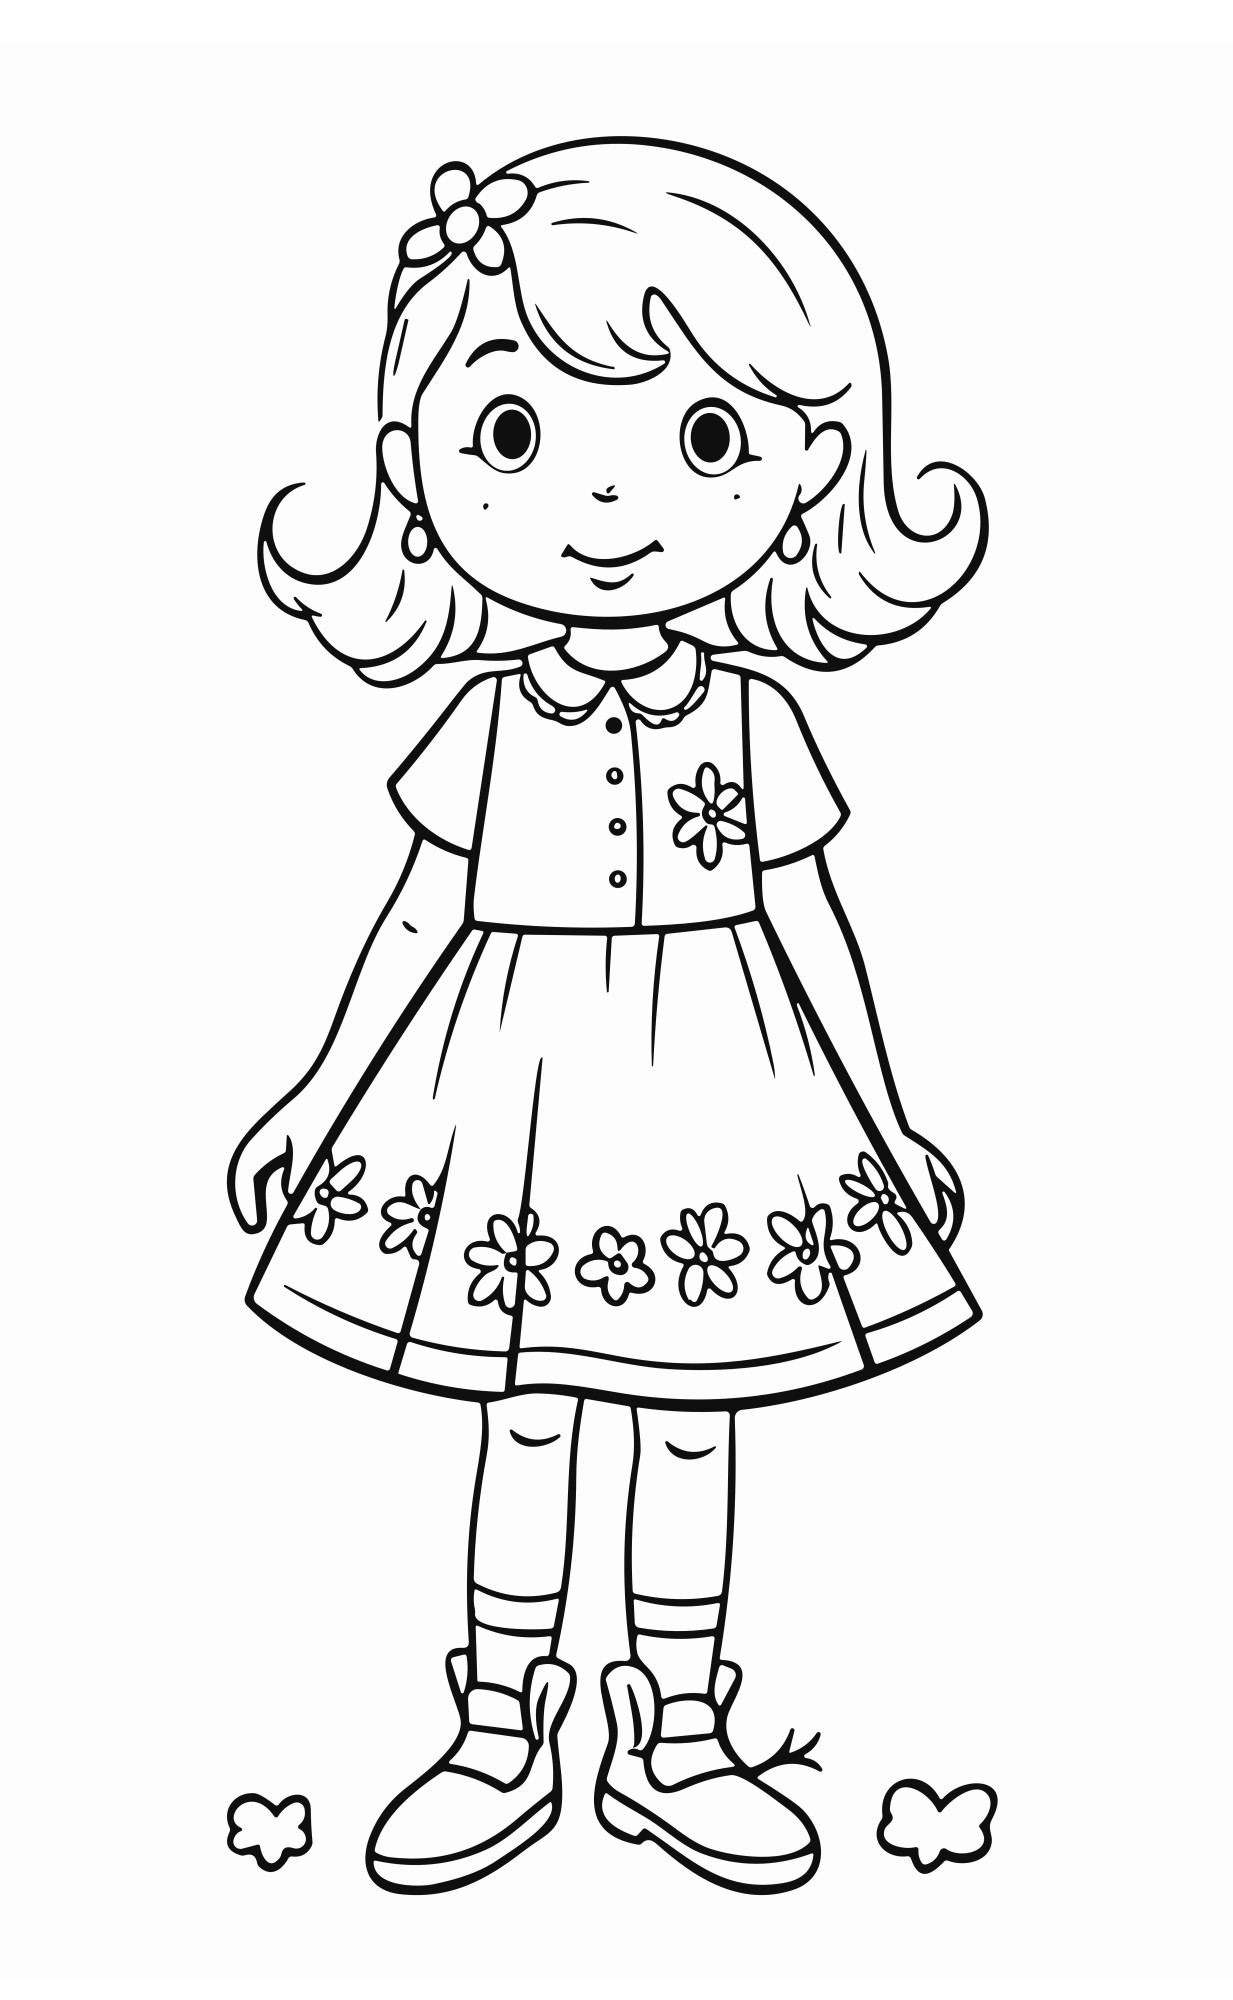 Раскраска для детей: милая кукла девочки с юбкой в ромашку